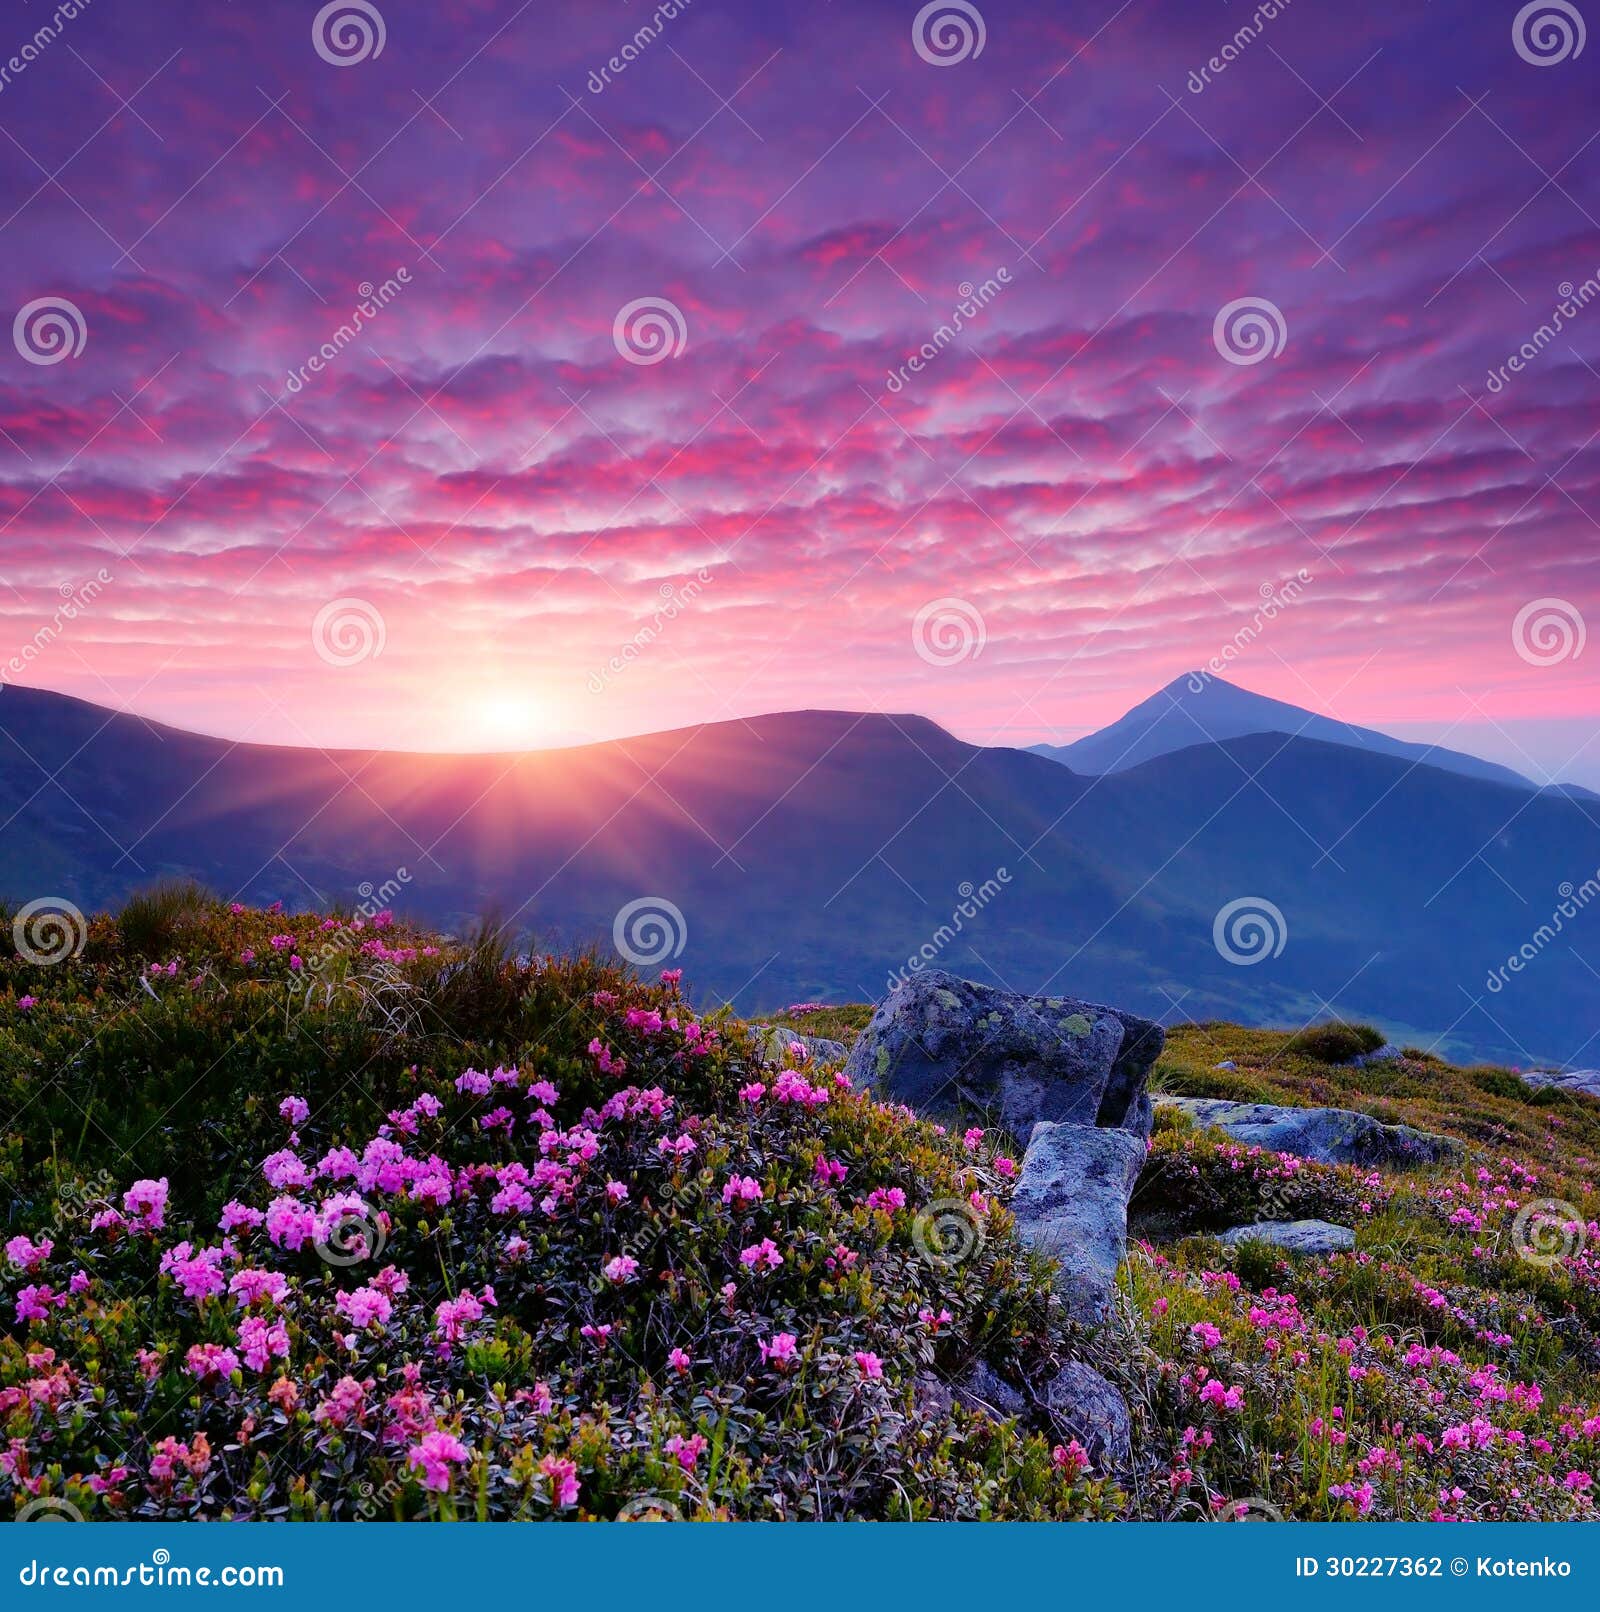 paysage-de-soir%C3%A9e-avec-les-fleurs-roses-dans-les-montagnes-et-le-coucher-de-soleil-30227362.jpg